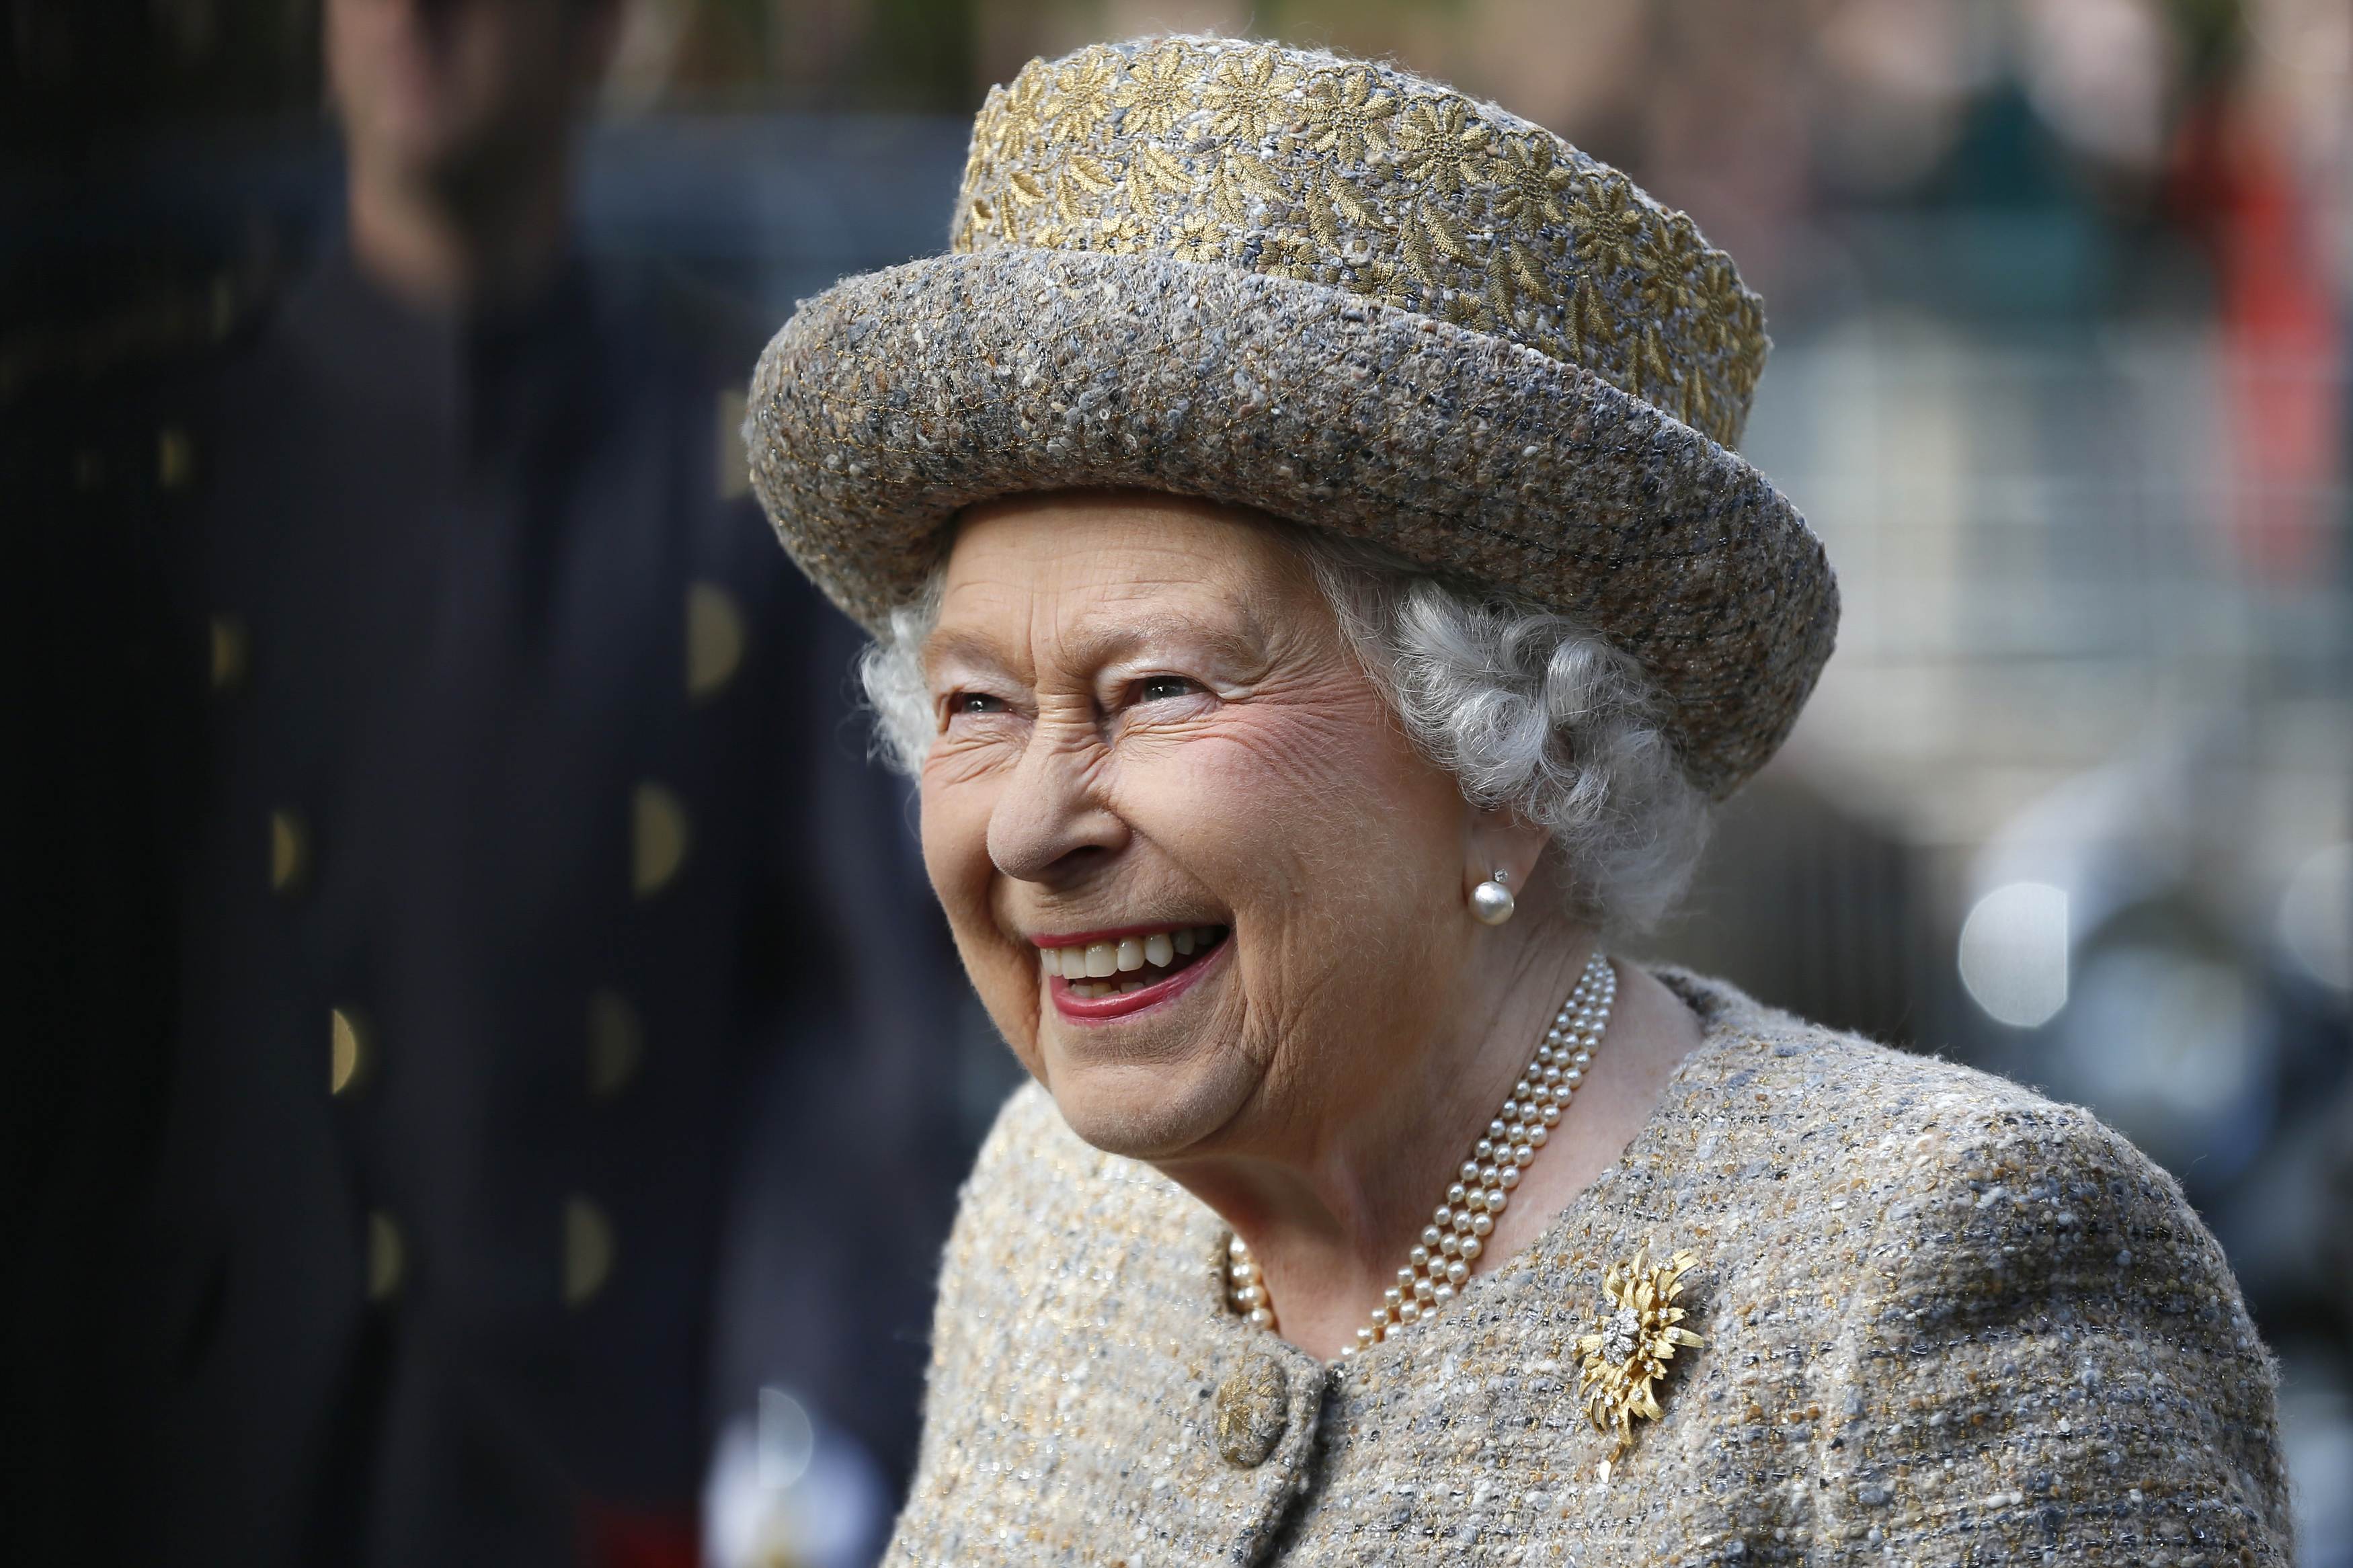 La reina Elizabeth II sonriendo cuando llega ante la inauguración del Flanders' Fields Memorial Garden en Wellington Barracks, el 6 de noviembre de 2014, en Londres, Inglaterra. | Foto: Getty Images